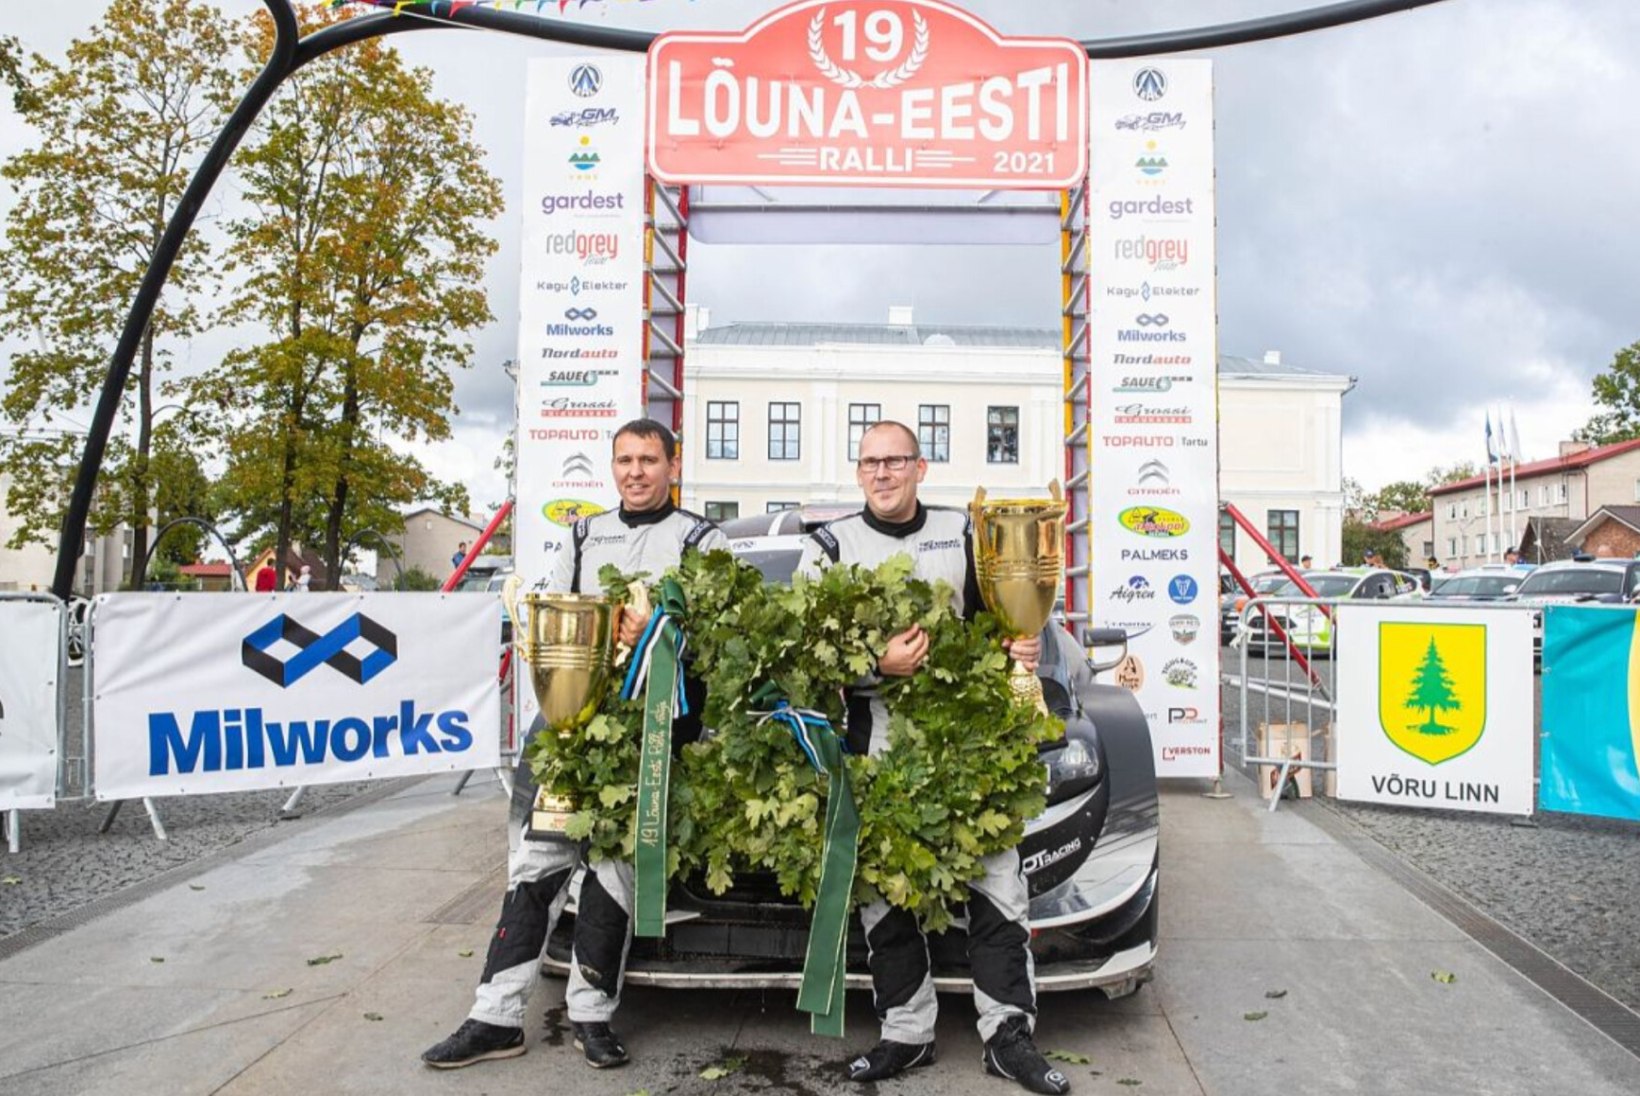 FOTOD | WRC-autol kihutanud Gross-Mõlderile Lõuna-Eestis vastast ei leidunud